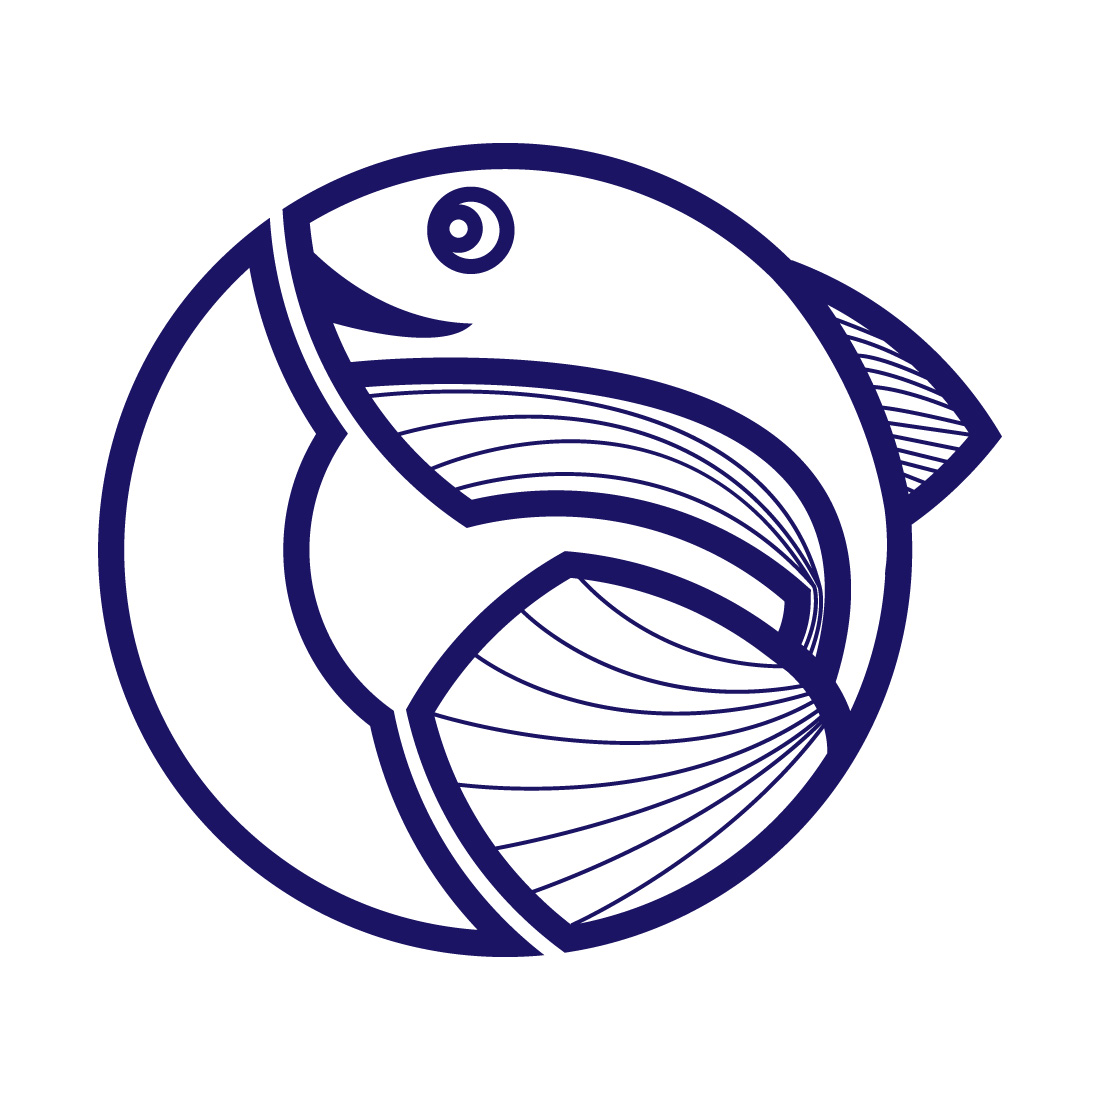 Fish logo design icon cover image.